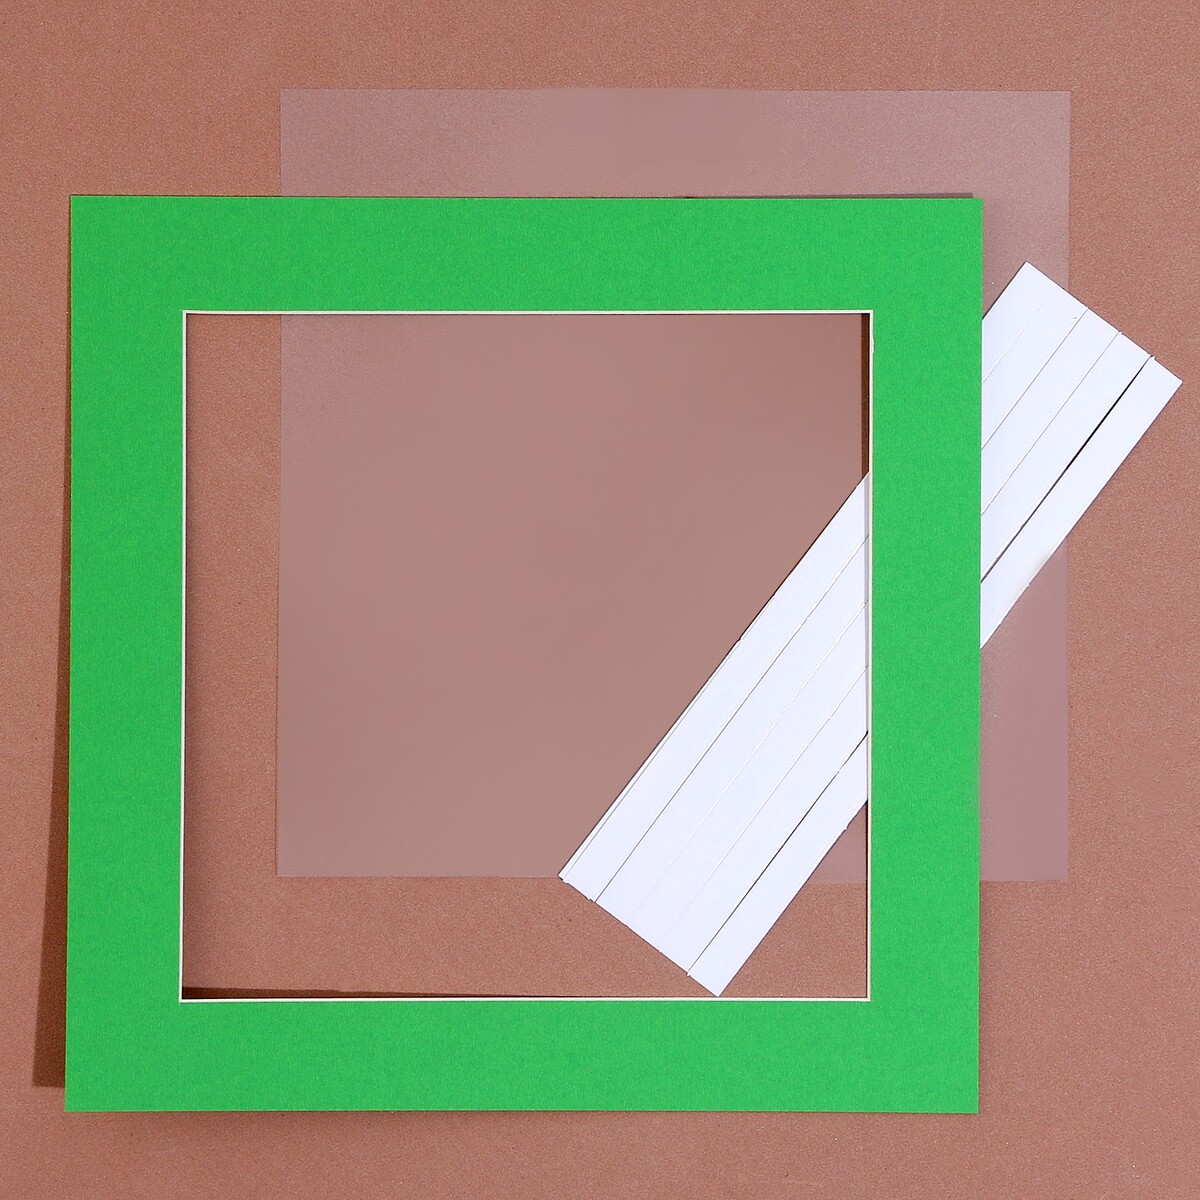 Паспарту размер рамки 24 × 24 см, прозрачный лист, клейкая лента, цвет зеленый паспарту размер рамки 35 × 35 см прозрачный лист клейкая лента зеленый